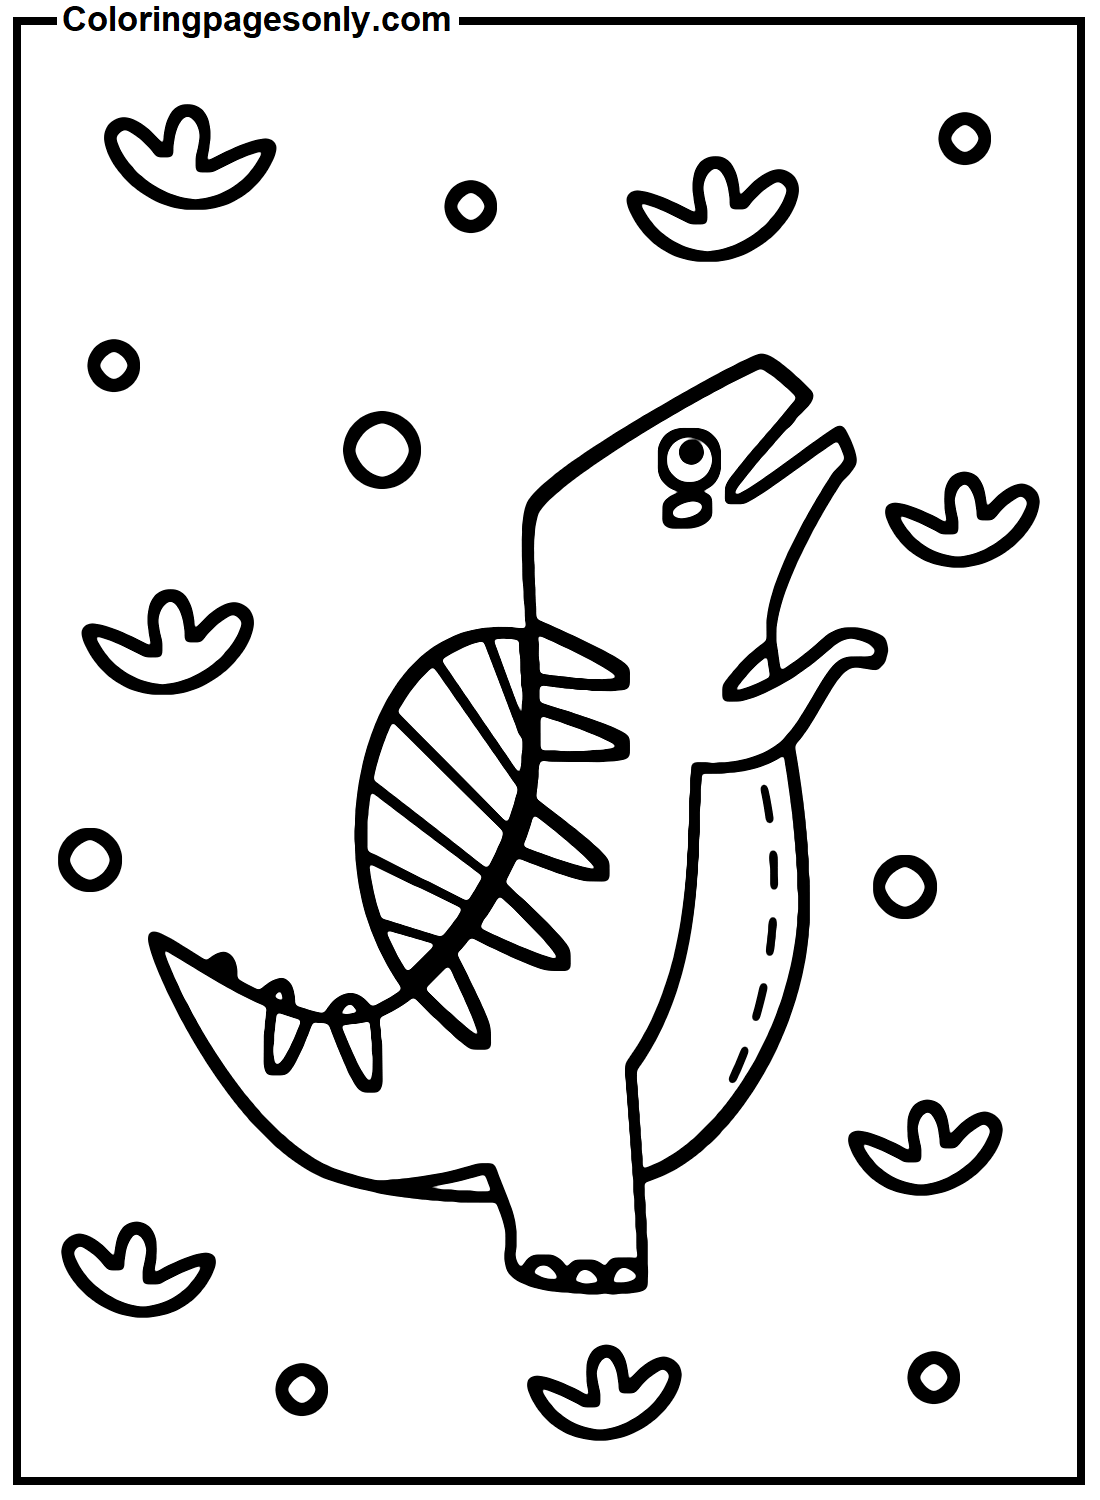 أوراق سبينوصور من سبينوصور